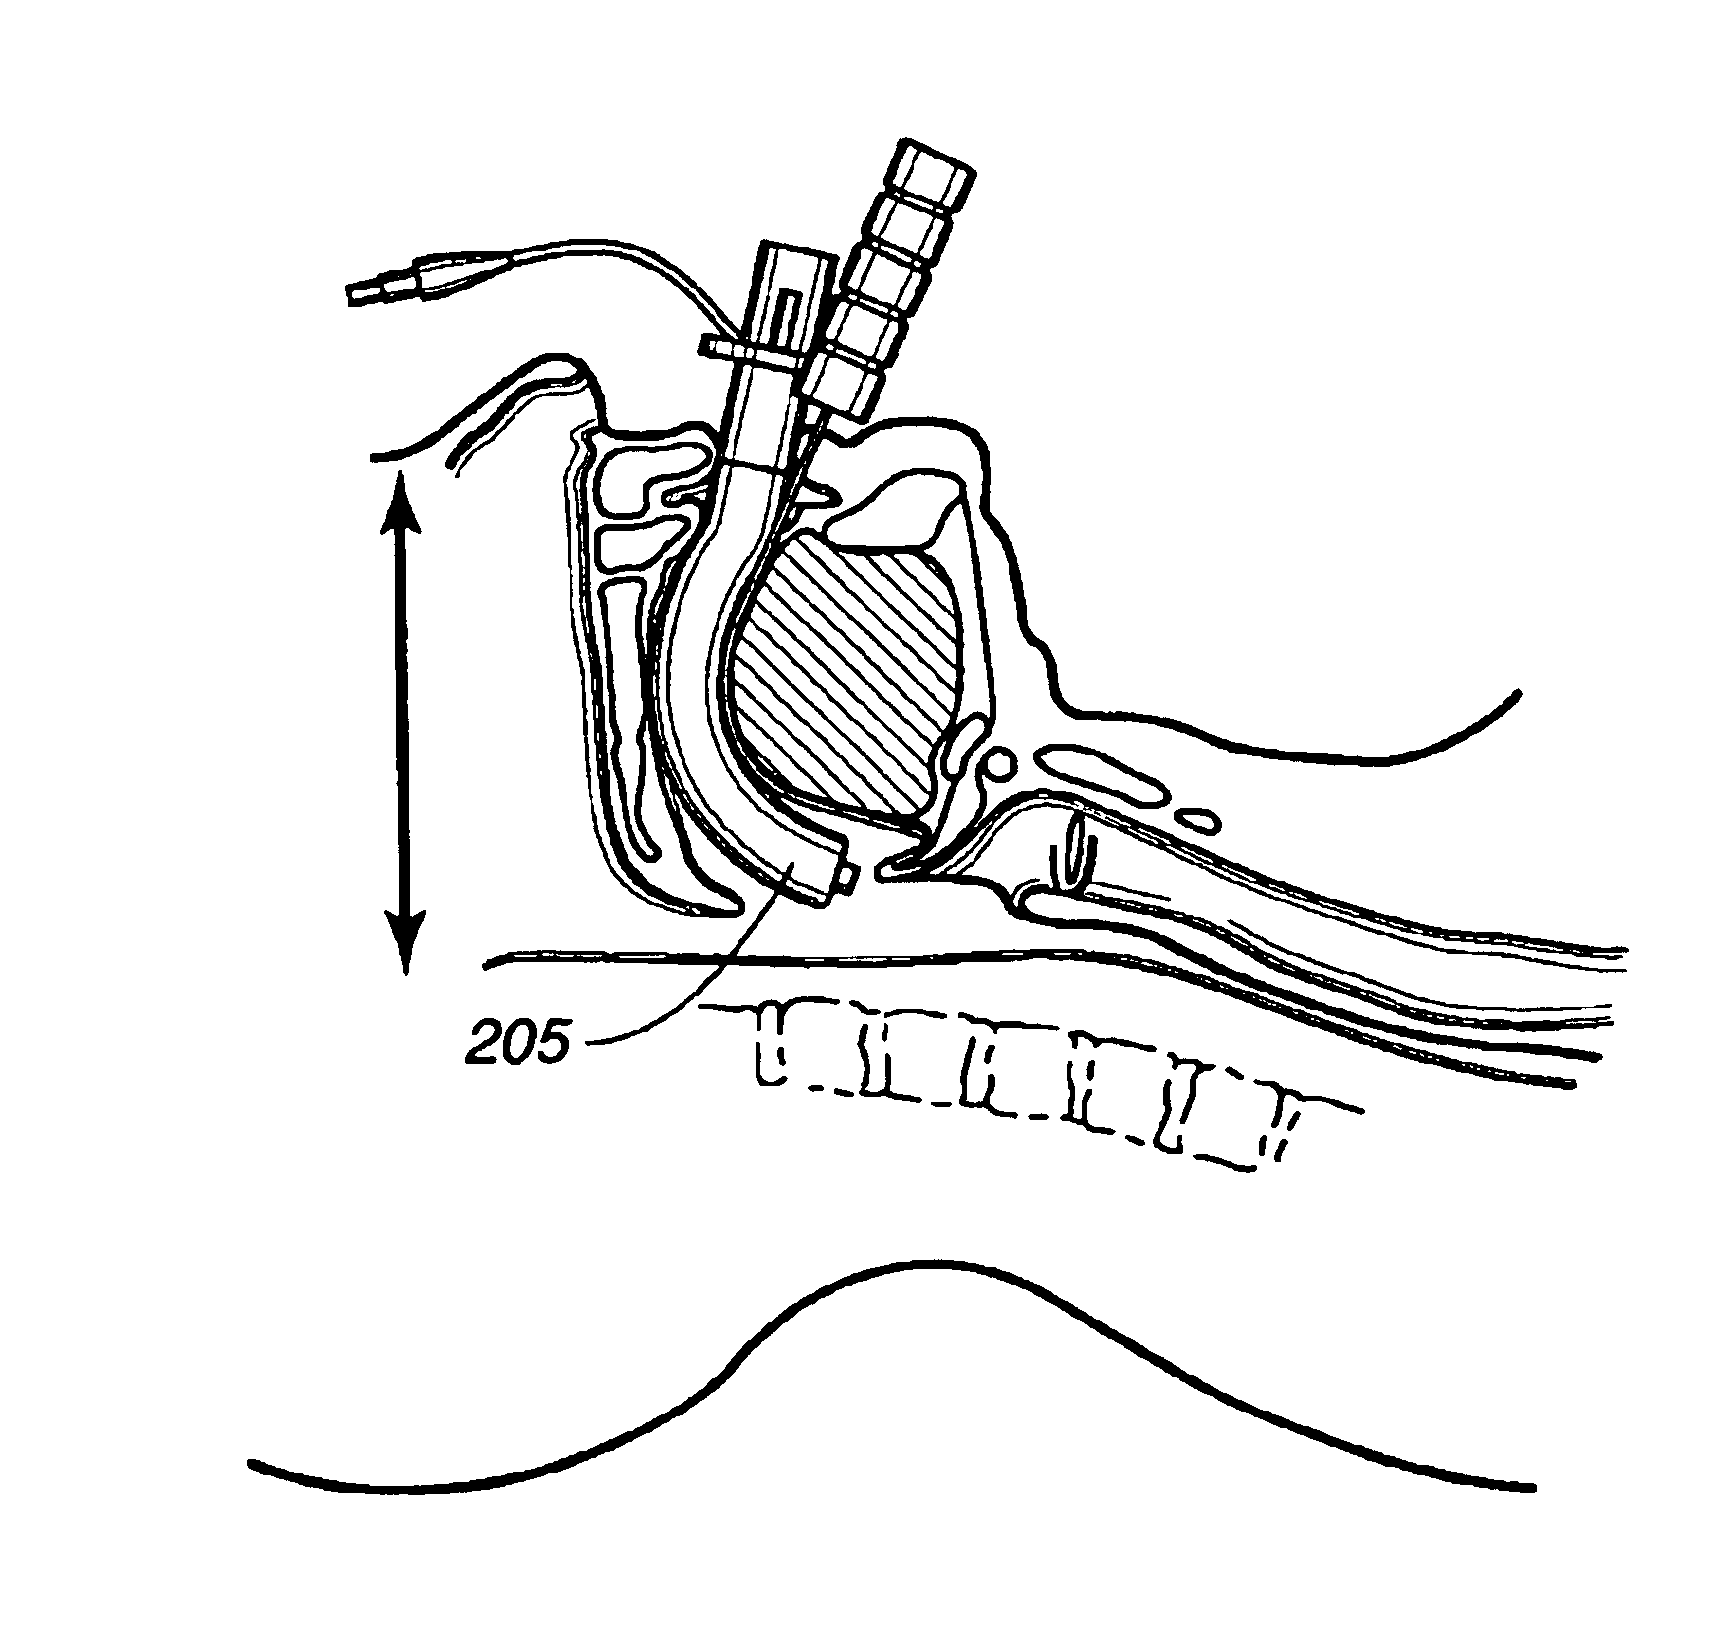 Superglottic and peri-laryngeal apparatus for supraglottic airway insertion